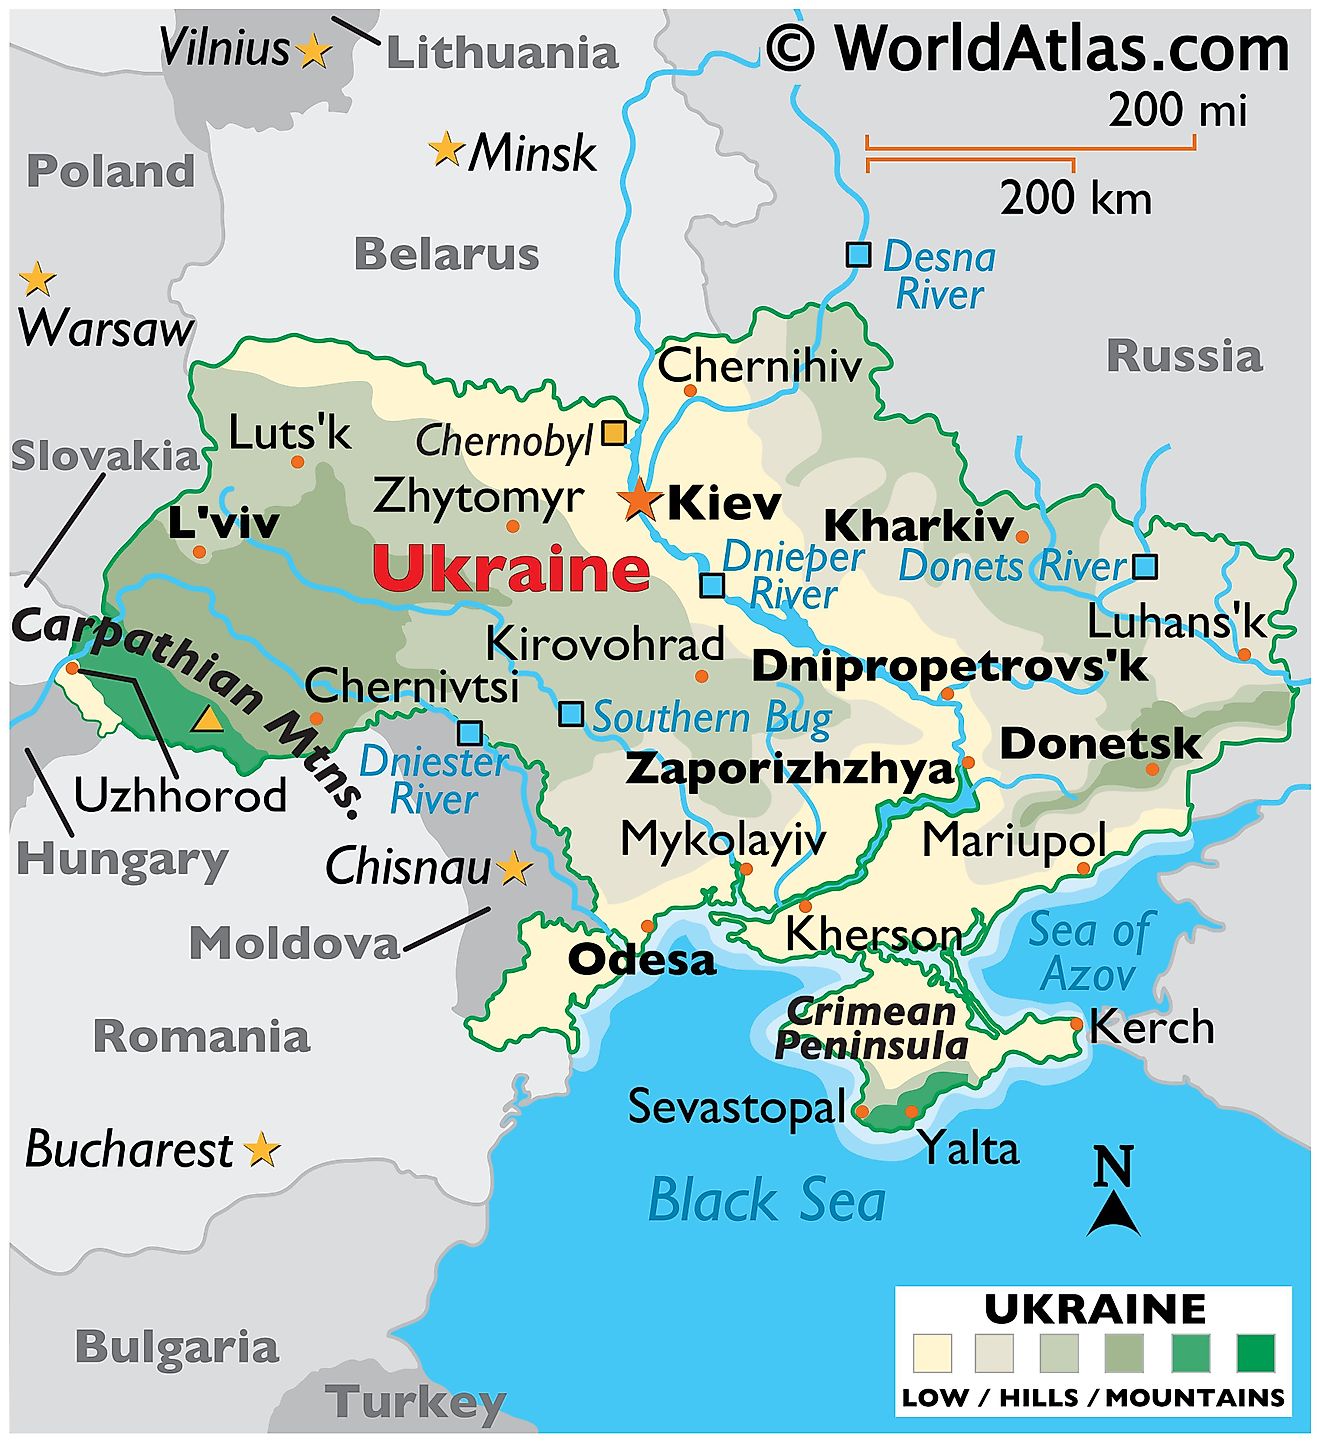 Mapa físico de Ucrania que muestra su relieve, las principales cadenas montañosas, la península de Crimea, los principales ríos, los países limítrofes, las ciudades importantes, etc.